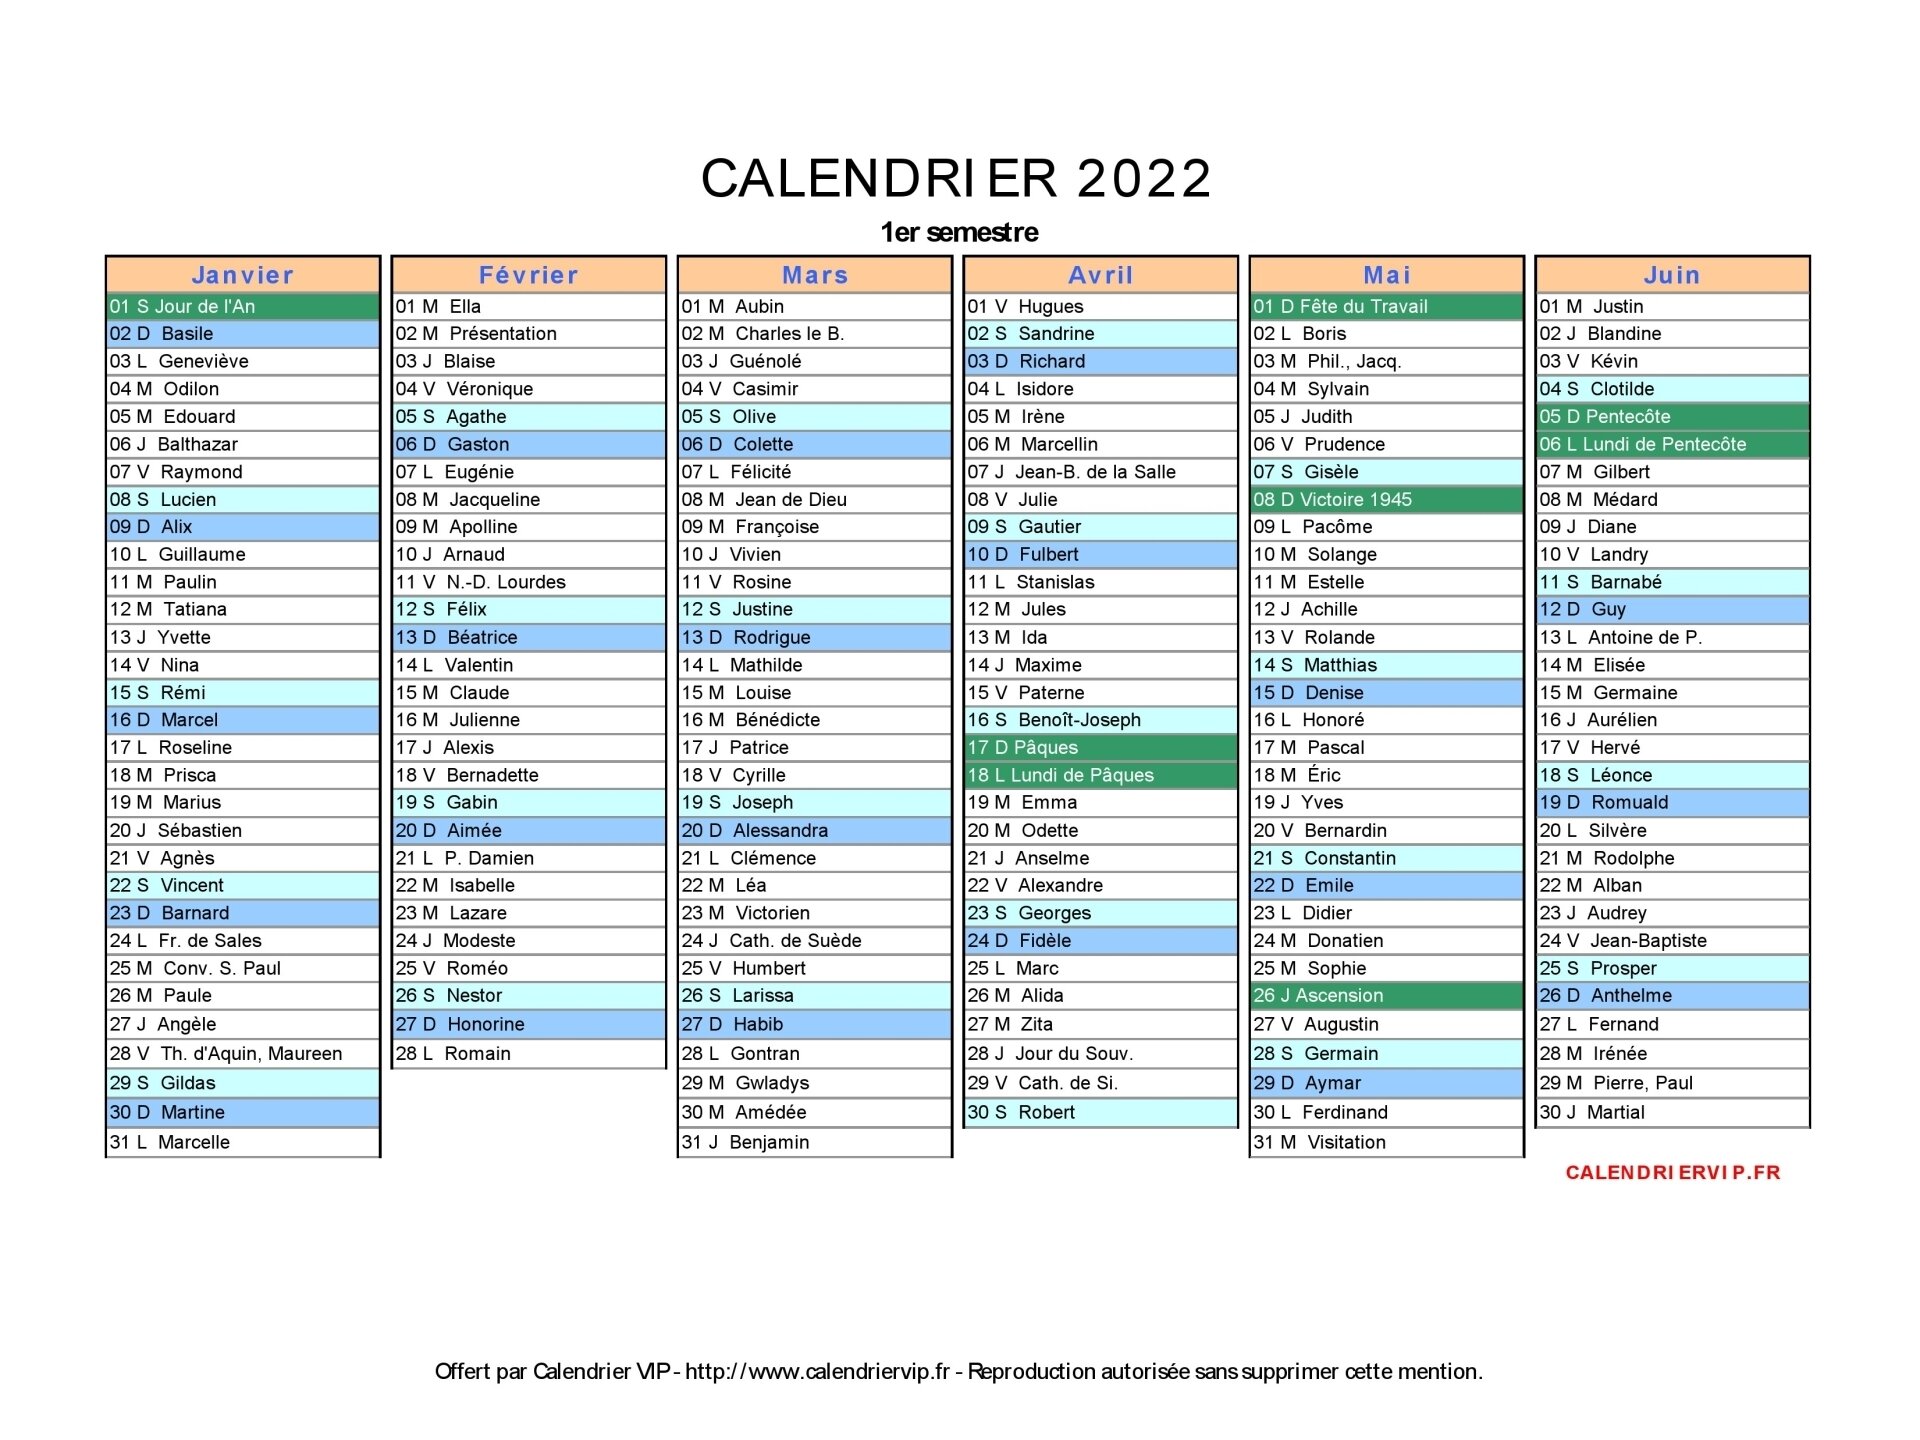 Calendrier 2022 à Télécharger Gratuitement Calendrier 2022 à imprimer gratuit en PDF et Excel